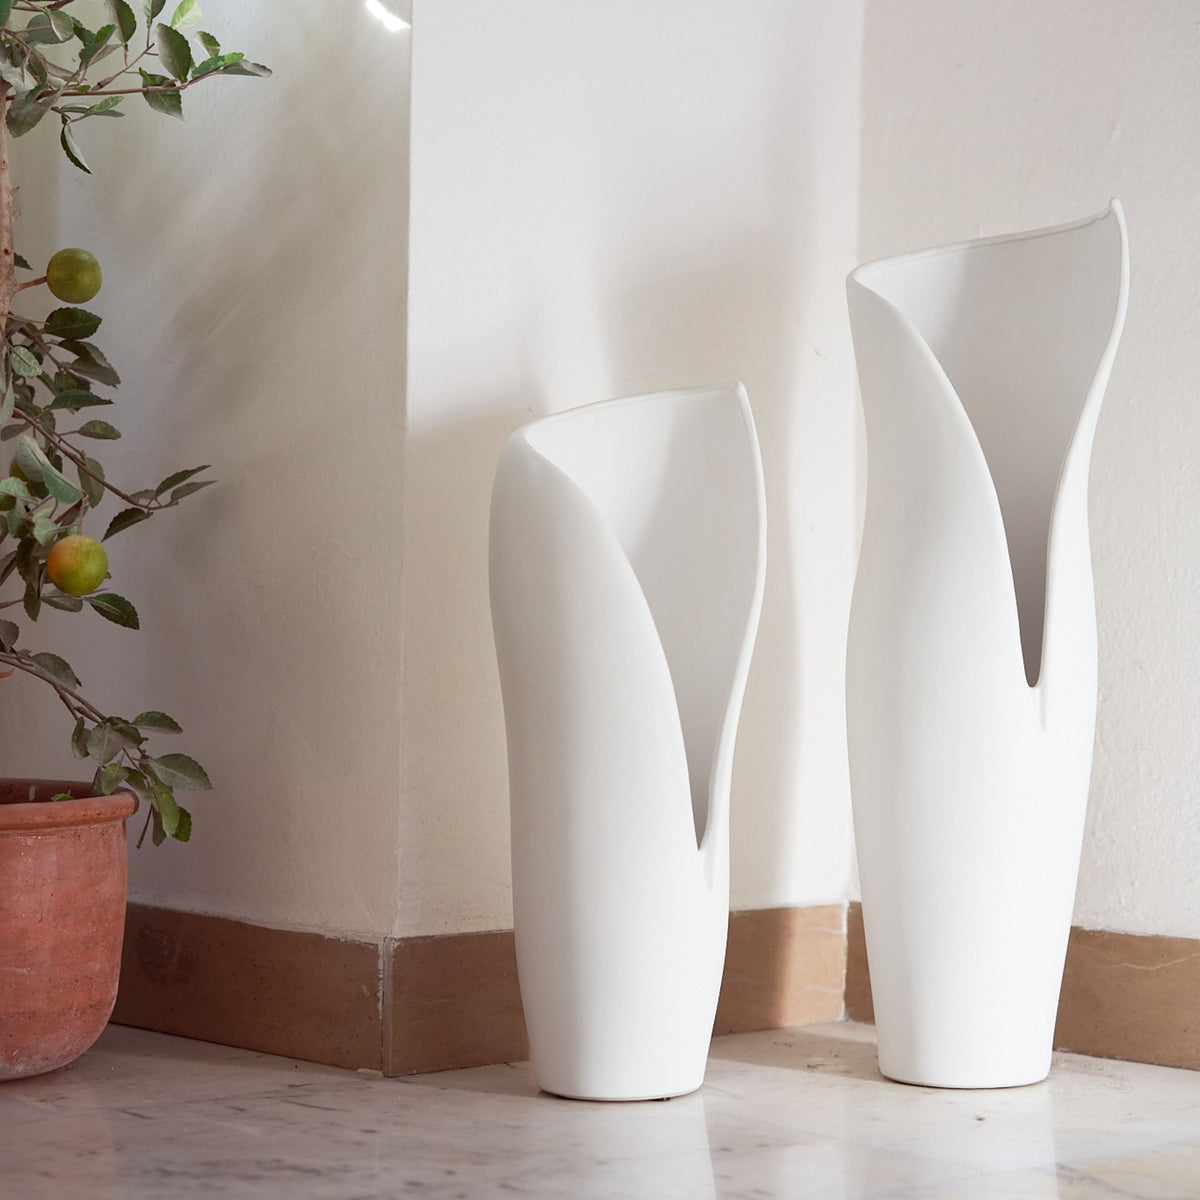 Orchidea finta CANDIDA in vaso di ceramica, bianco, 65cm, Ø7-8cm